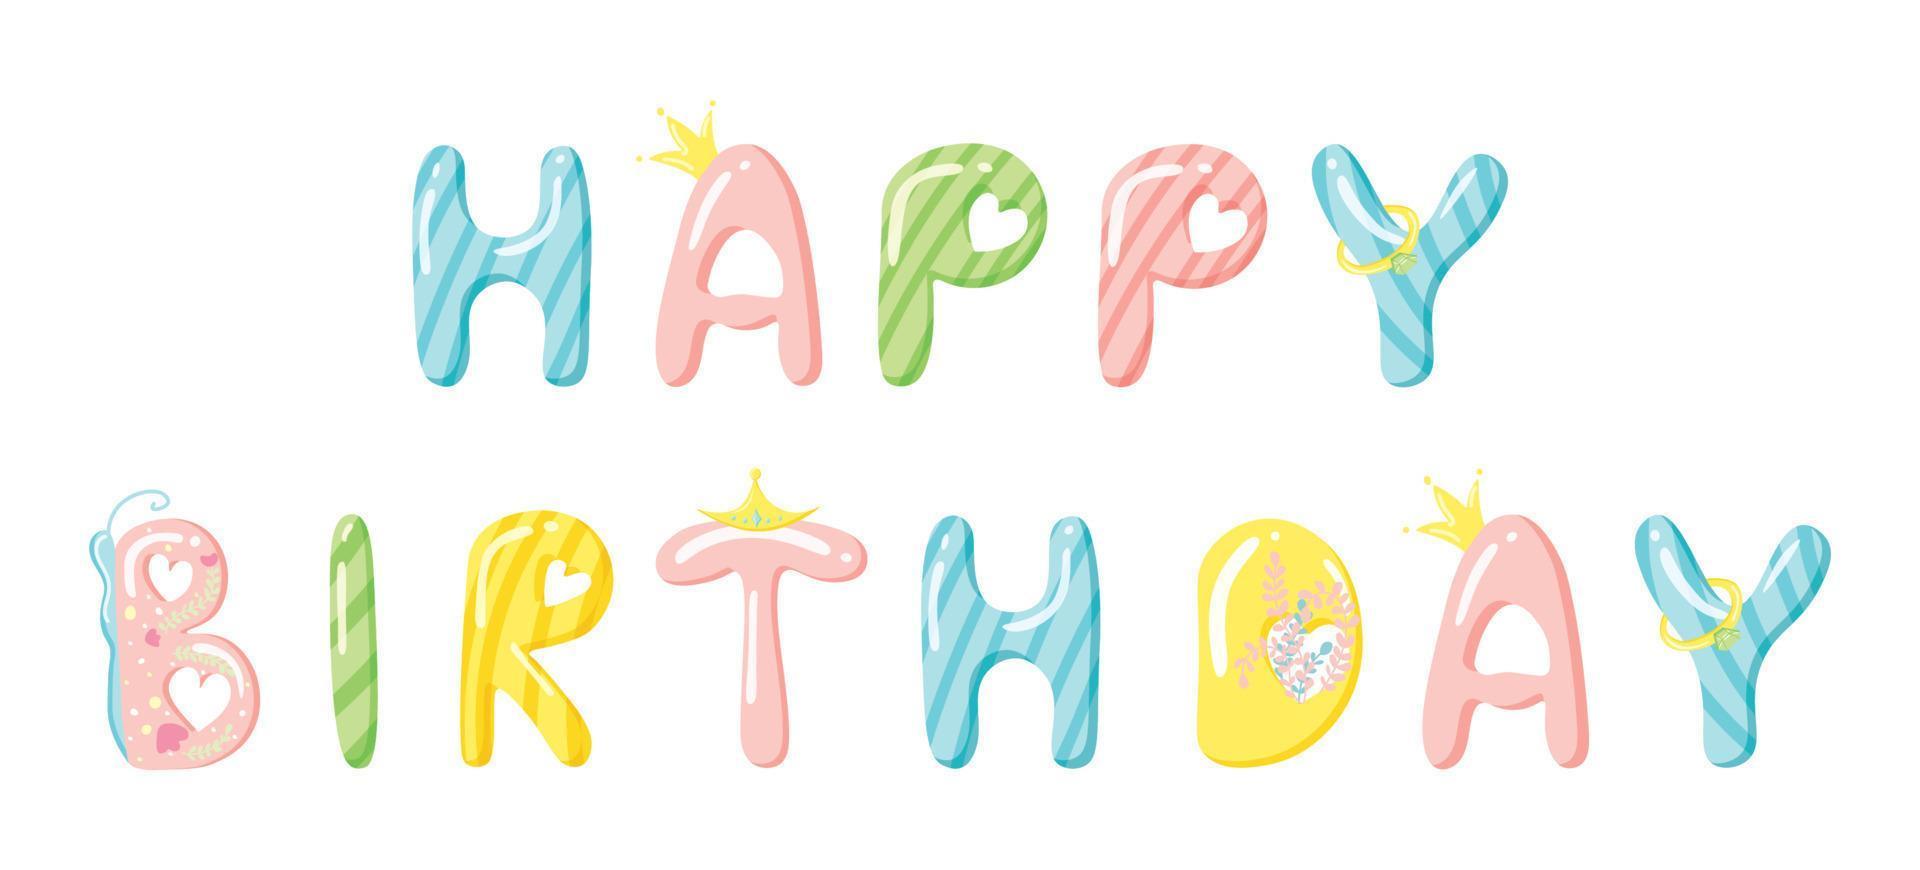 letras de feliz aniversário de doces. letras engraçadas de caramelo doce. bebê design festivo para chás de bebê, cartazes, banners, arte de parede, cartões. ilustração vetorial fofa com texto. vetor